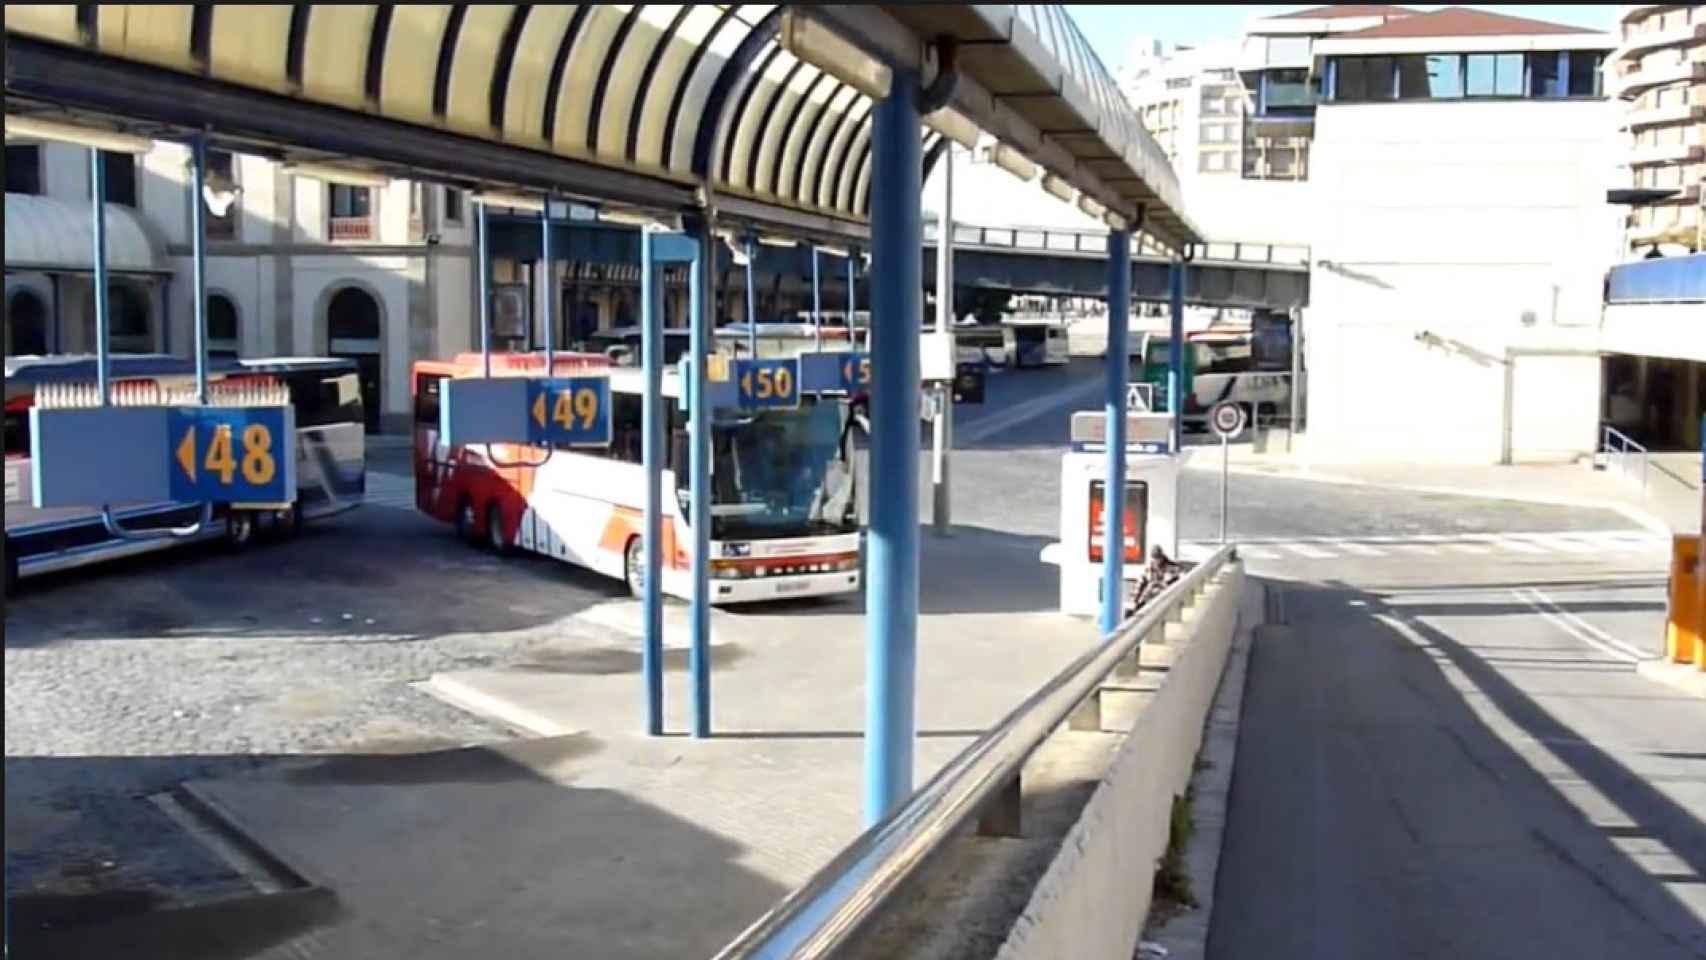 Imagen de la estación de autobuses de Vilafranca del Penedés, donde han detenido al 'atracador del papel' / CG